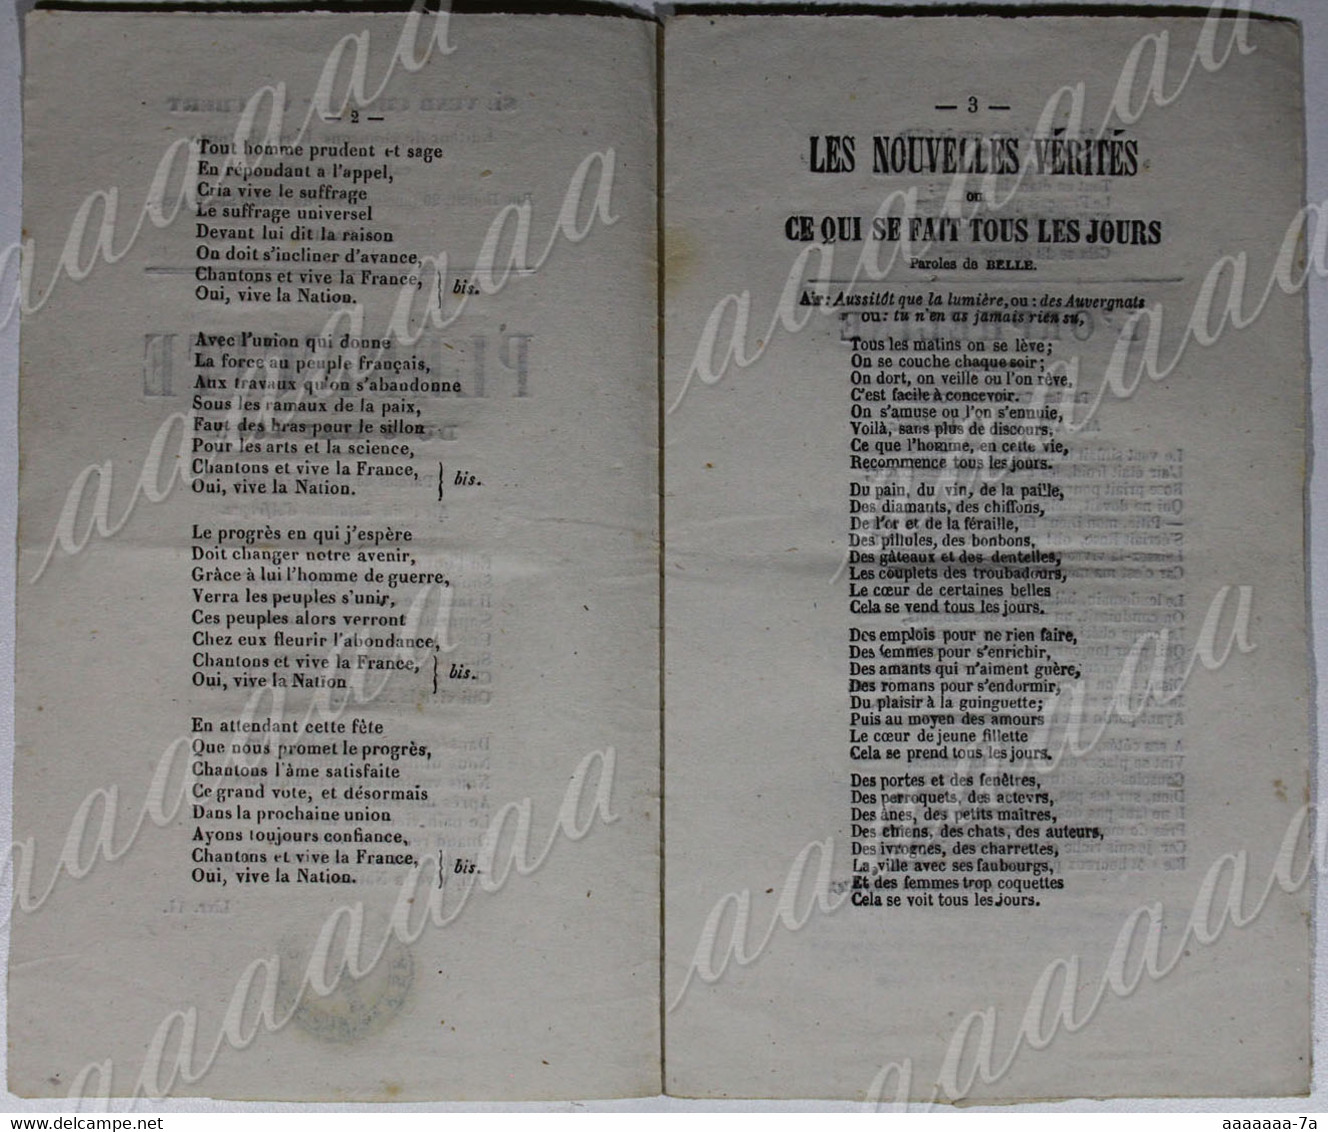 Livret De Chansons, éditeur Mme Ve Aubert , "le Plébiscite Du 8 Mai 1870",l'orpheline, Le Vin, Sans Queue Ni Tête. - Historical Documents